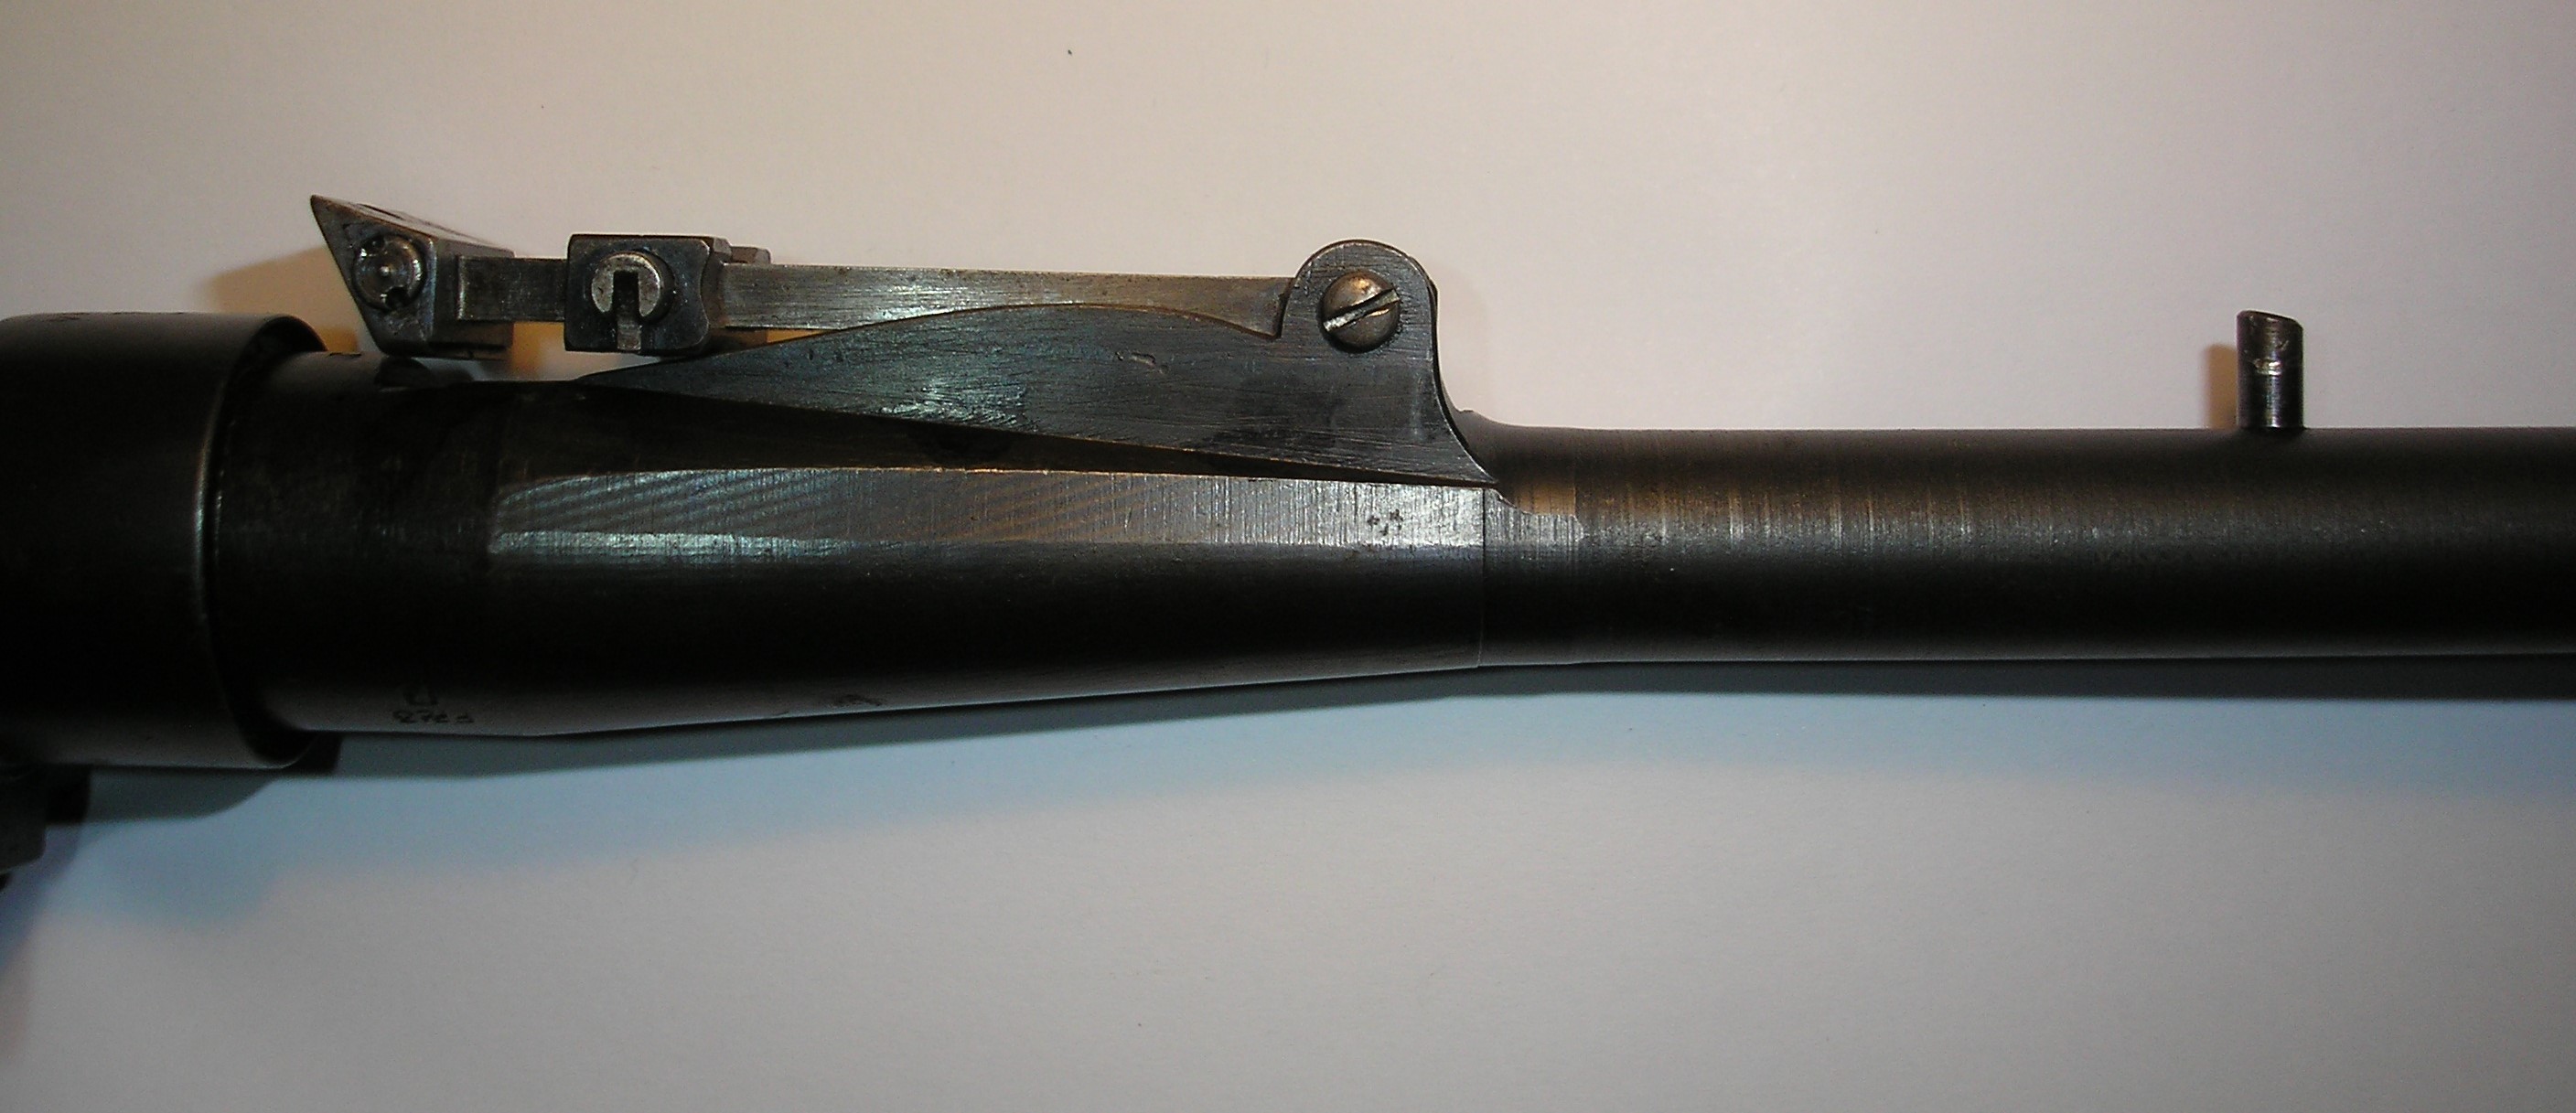 ./guns/rifle/bilder/Rifle-Kongsberg-Krag-M1912-3891-6.JPG